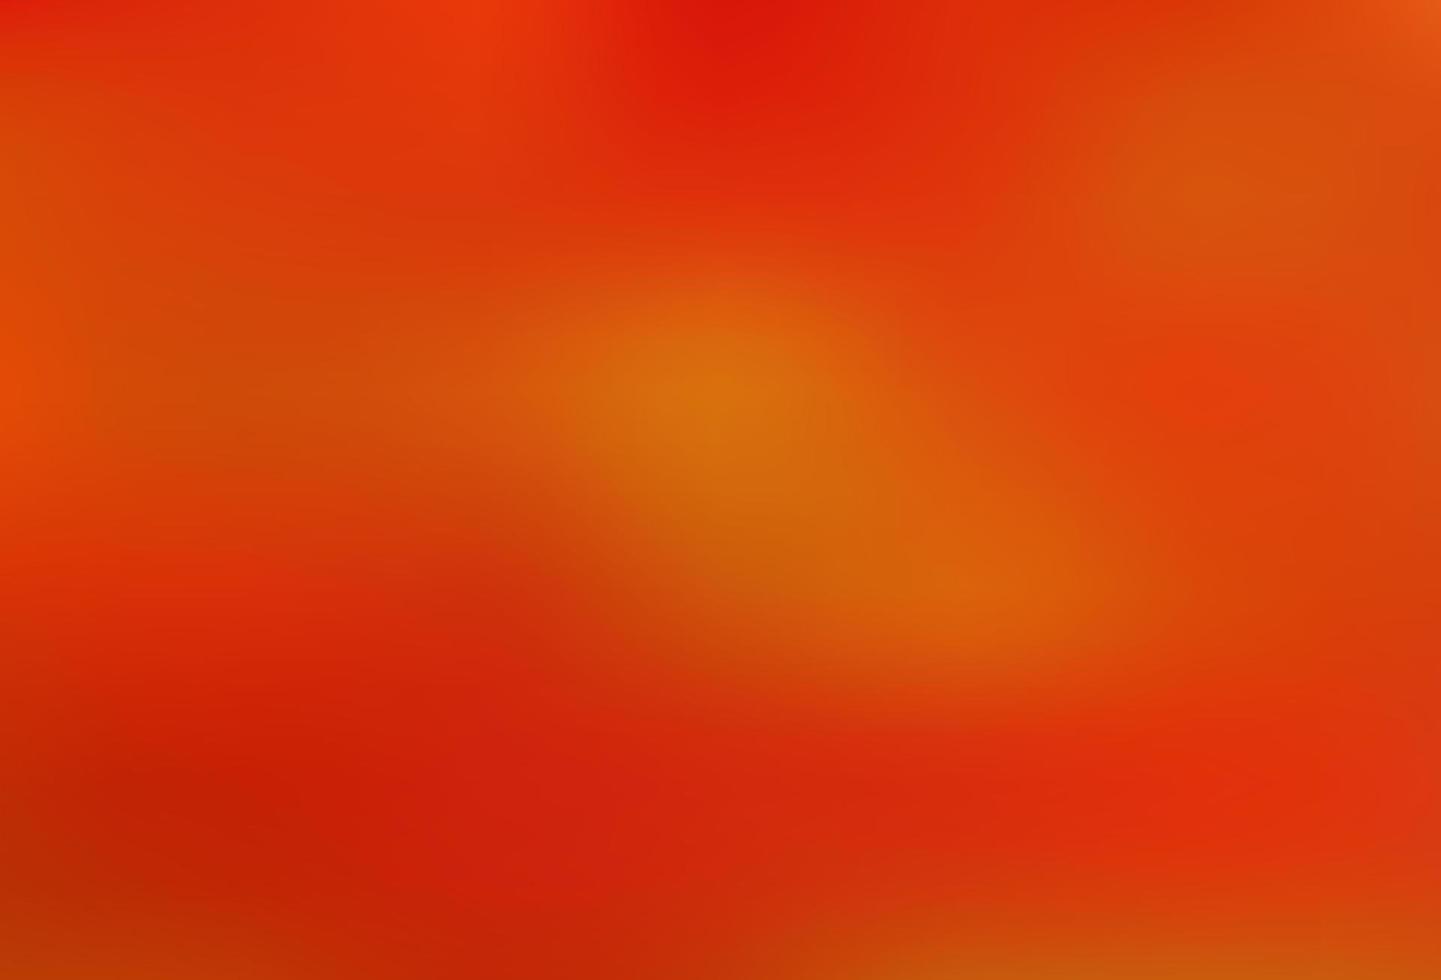 sfondo luminoso astratto di vettore arancione chiaro.